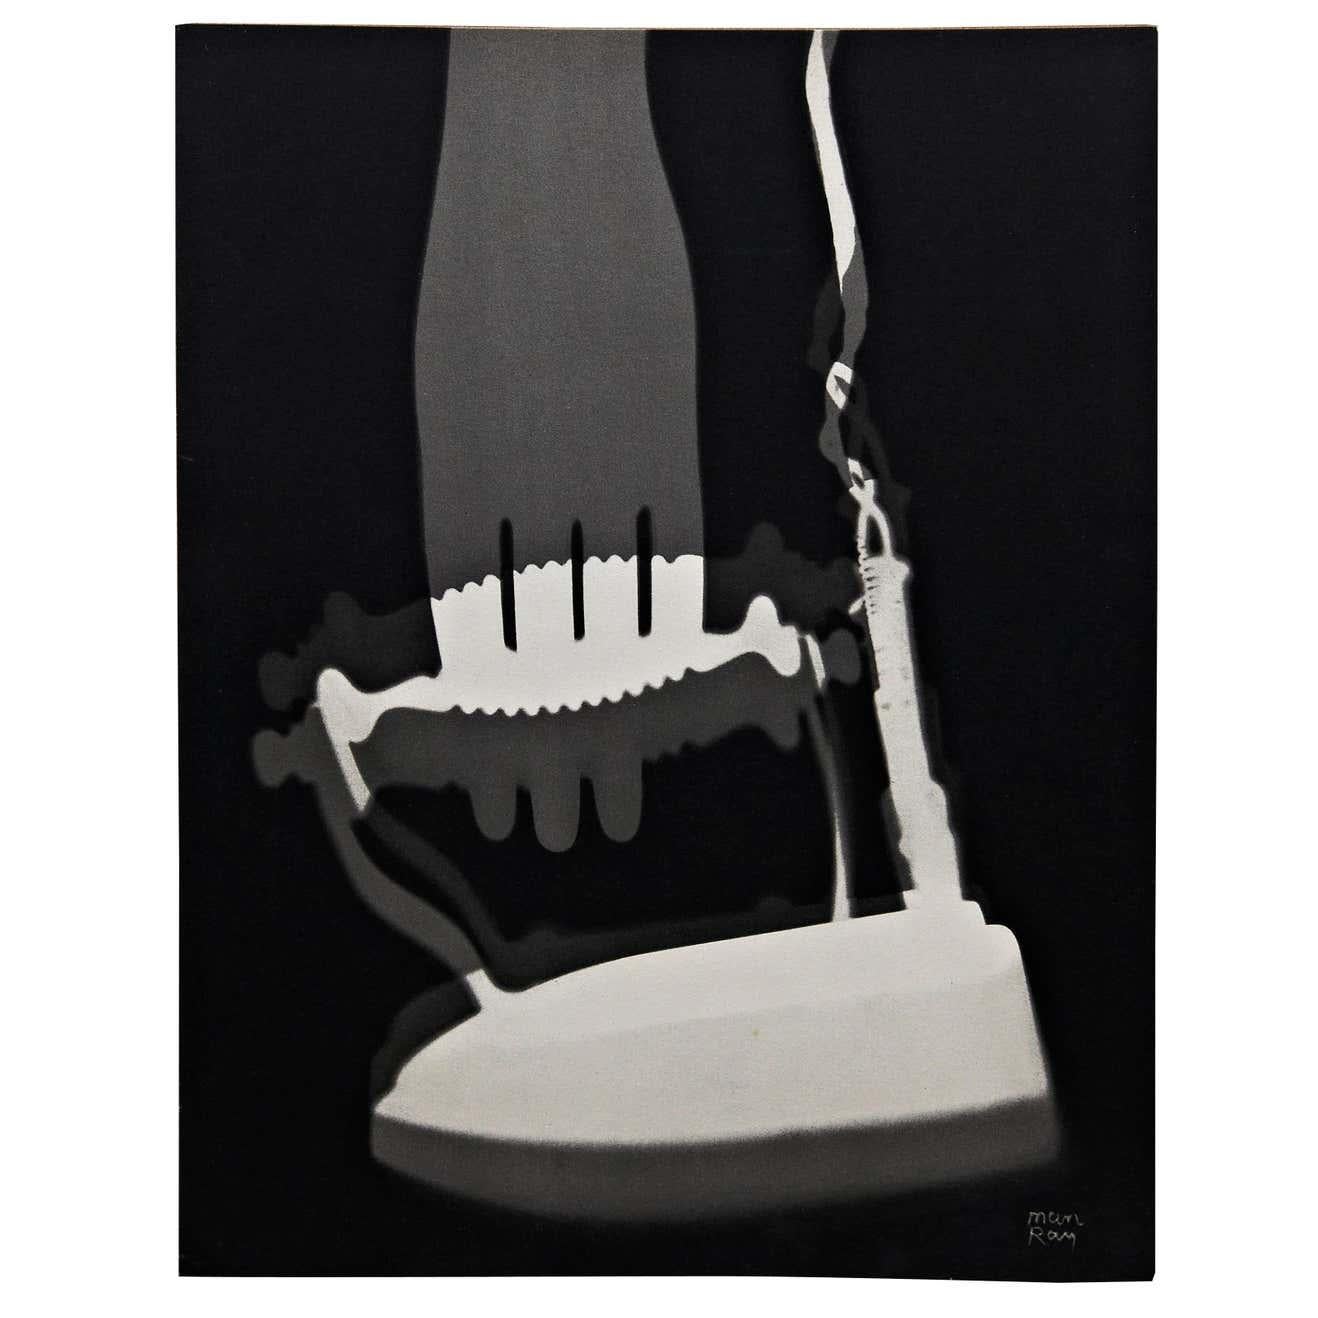 Rayographie He'liogravure de Man Ray pour la Compagnie Parisienne de Distribution d'Electricite', 1931.

Imprimé en héliogravure et signé dans le négatif
500 exemplaires.

Man Ray (1890-1976) était un artiste visuel américain qui a passé la